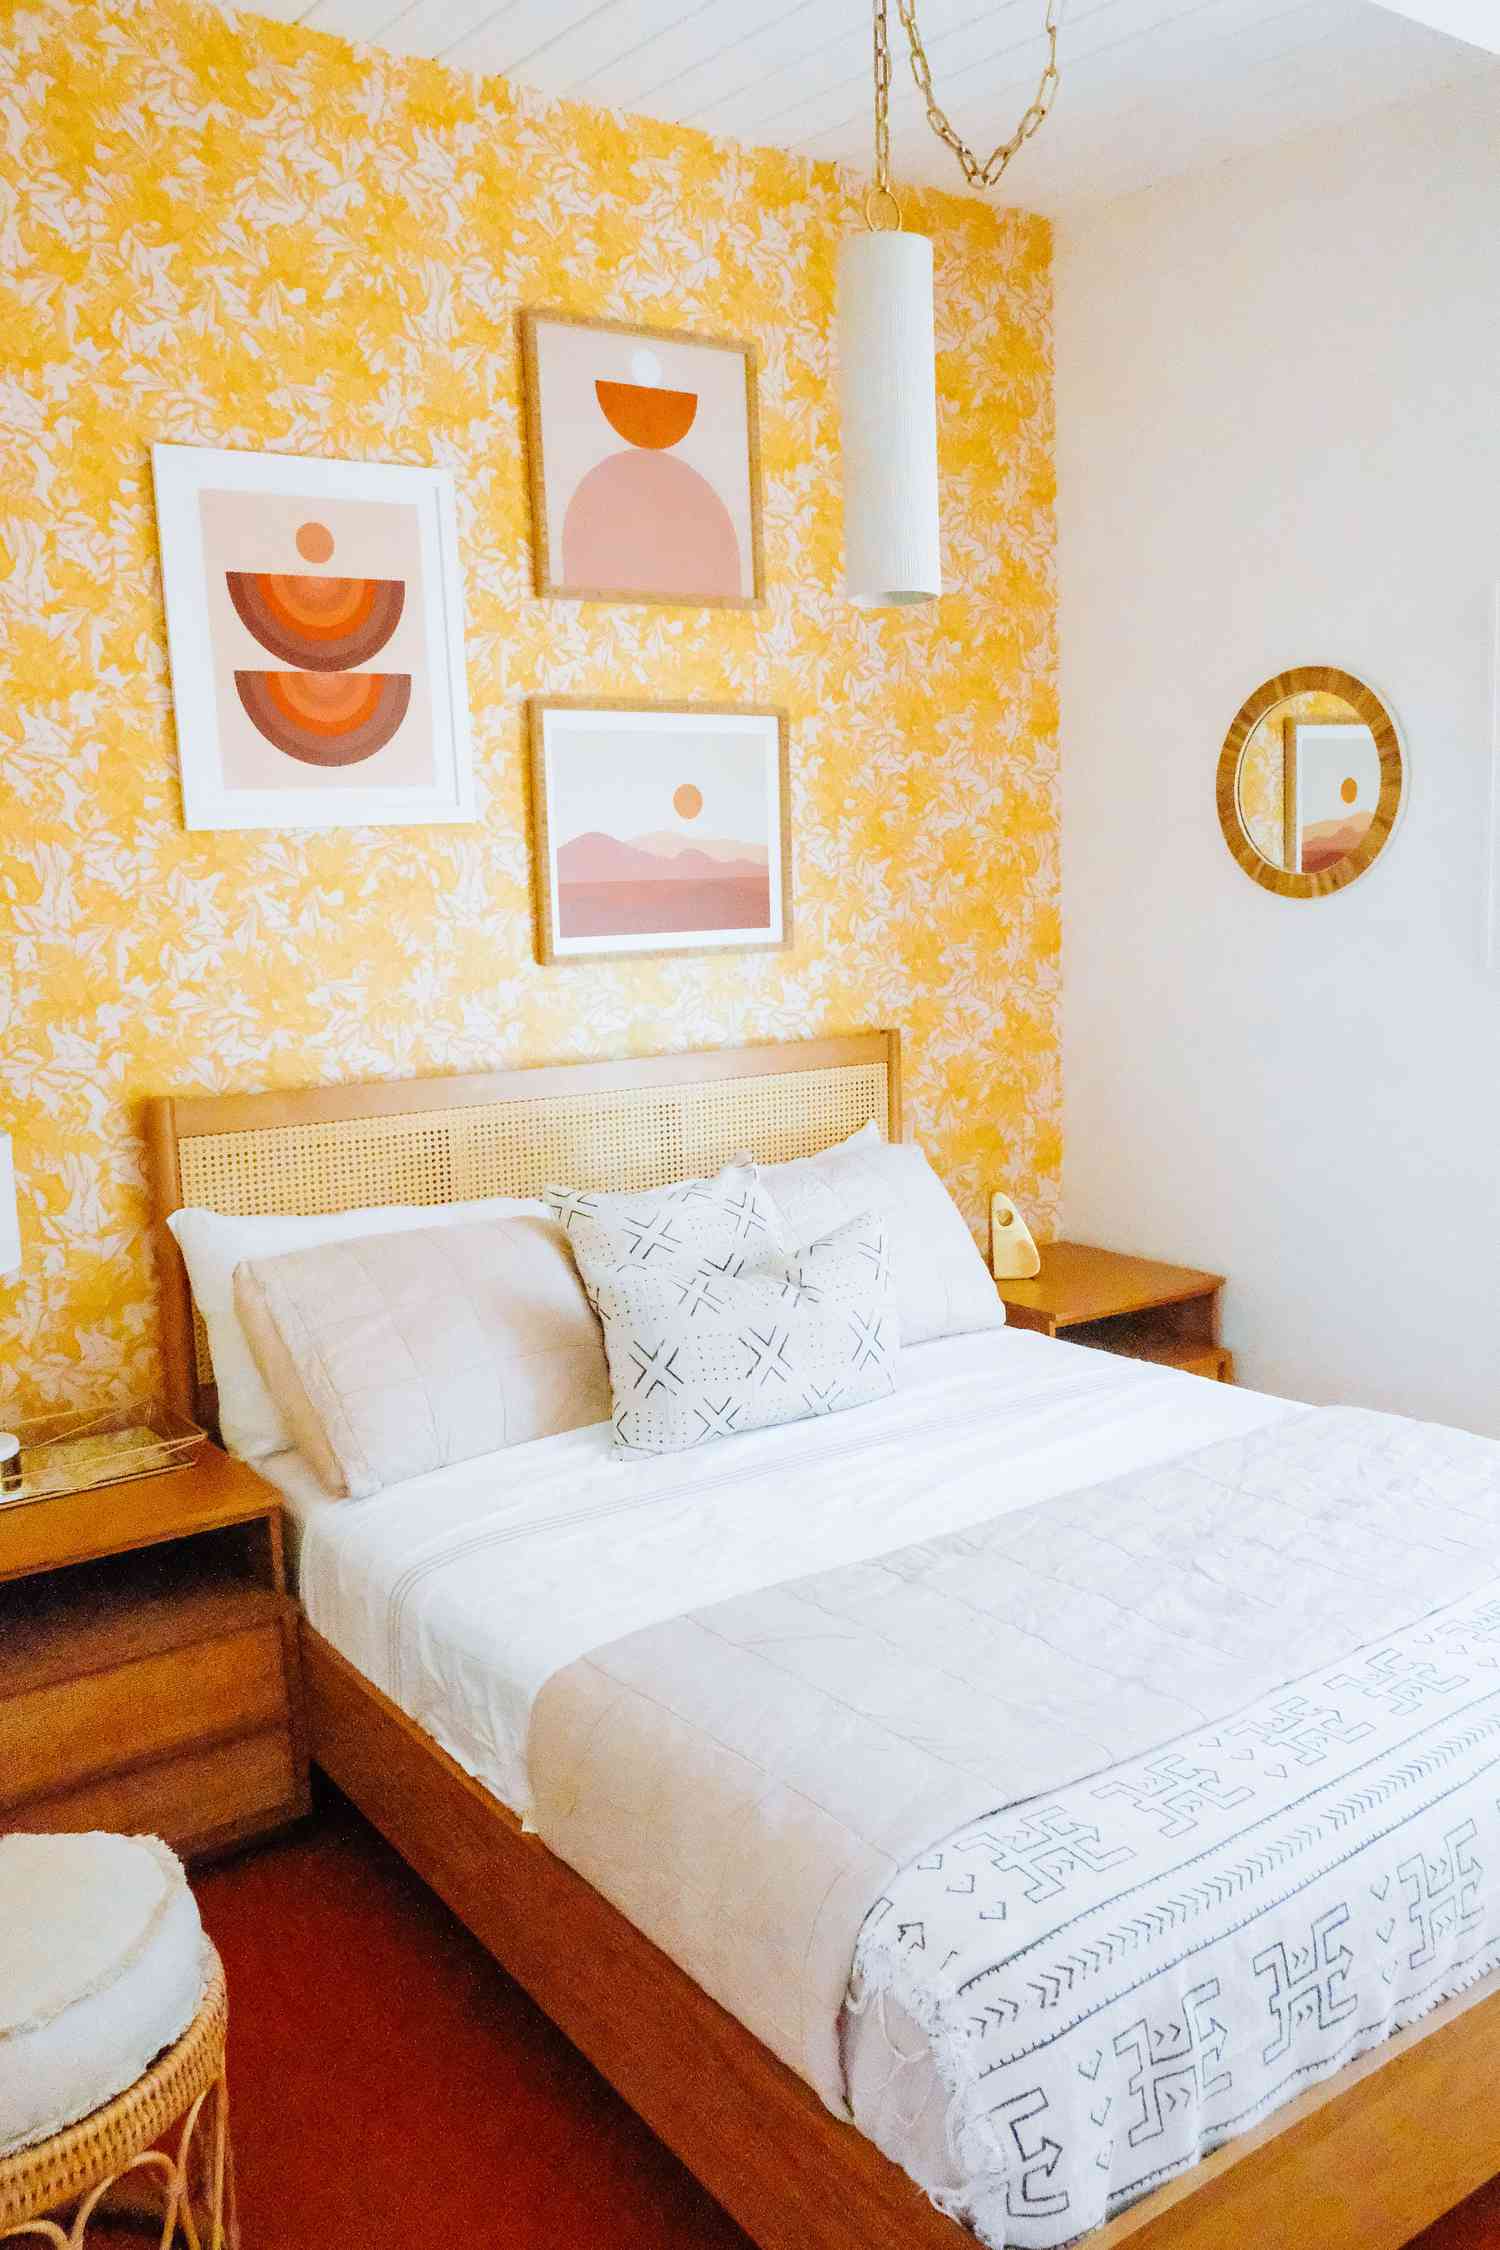 dormitorio con papel pintado amarillo floral, acentuado con tonos rojos y naranjas, muebles de mimbre y madera